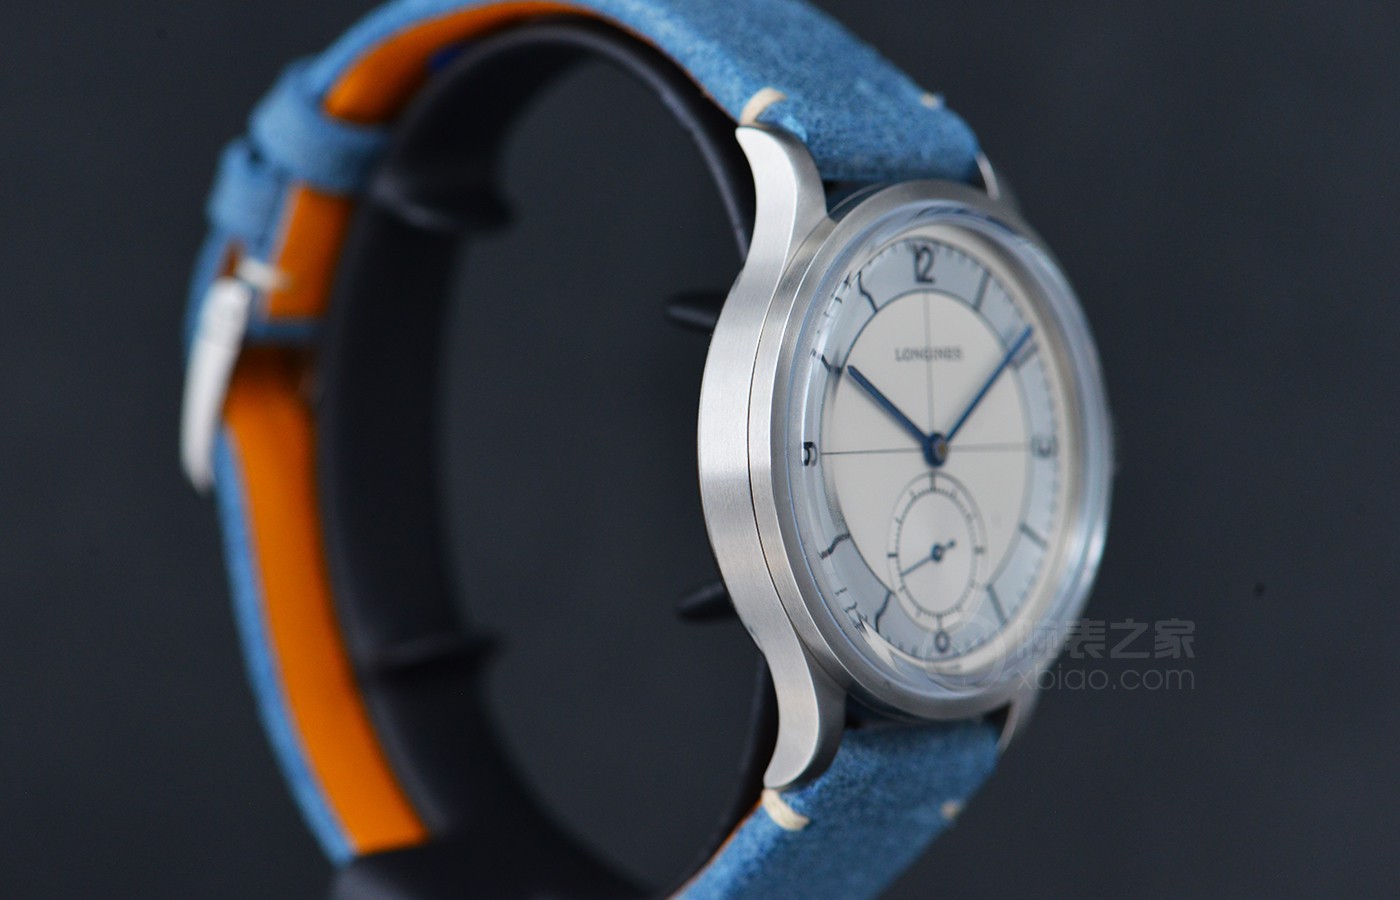 源自1930年代的历史表款 品评浪琴经典还原系列产品全新的腕表